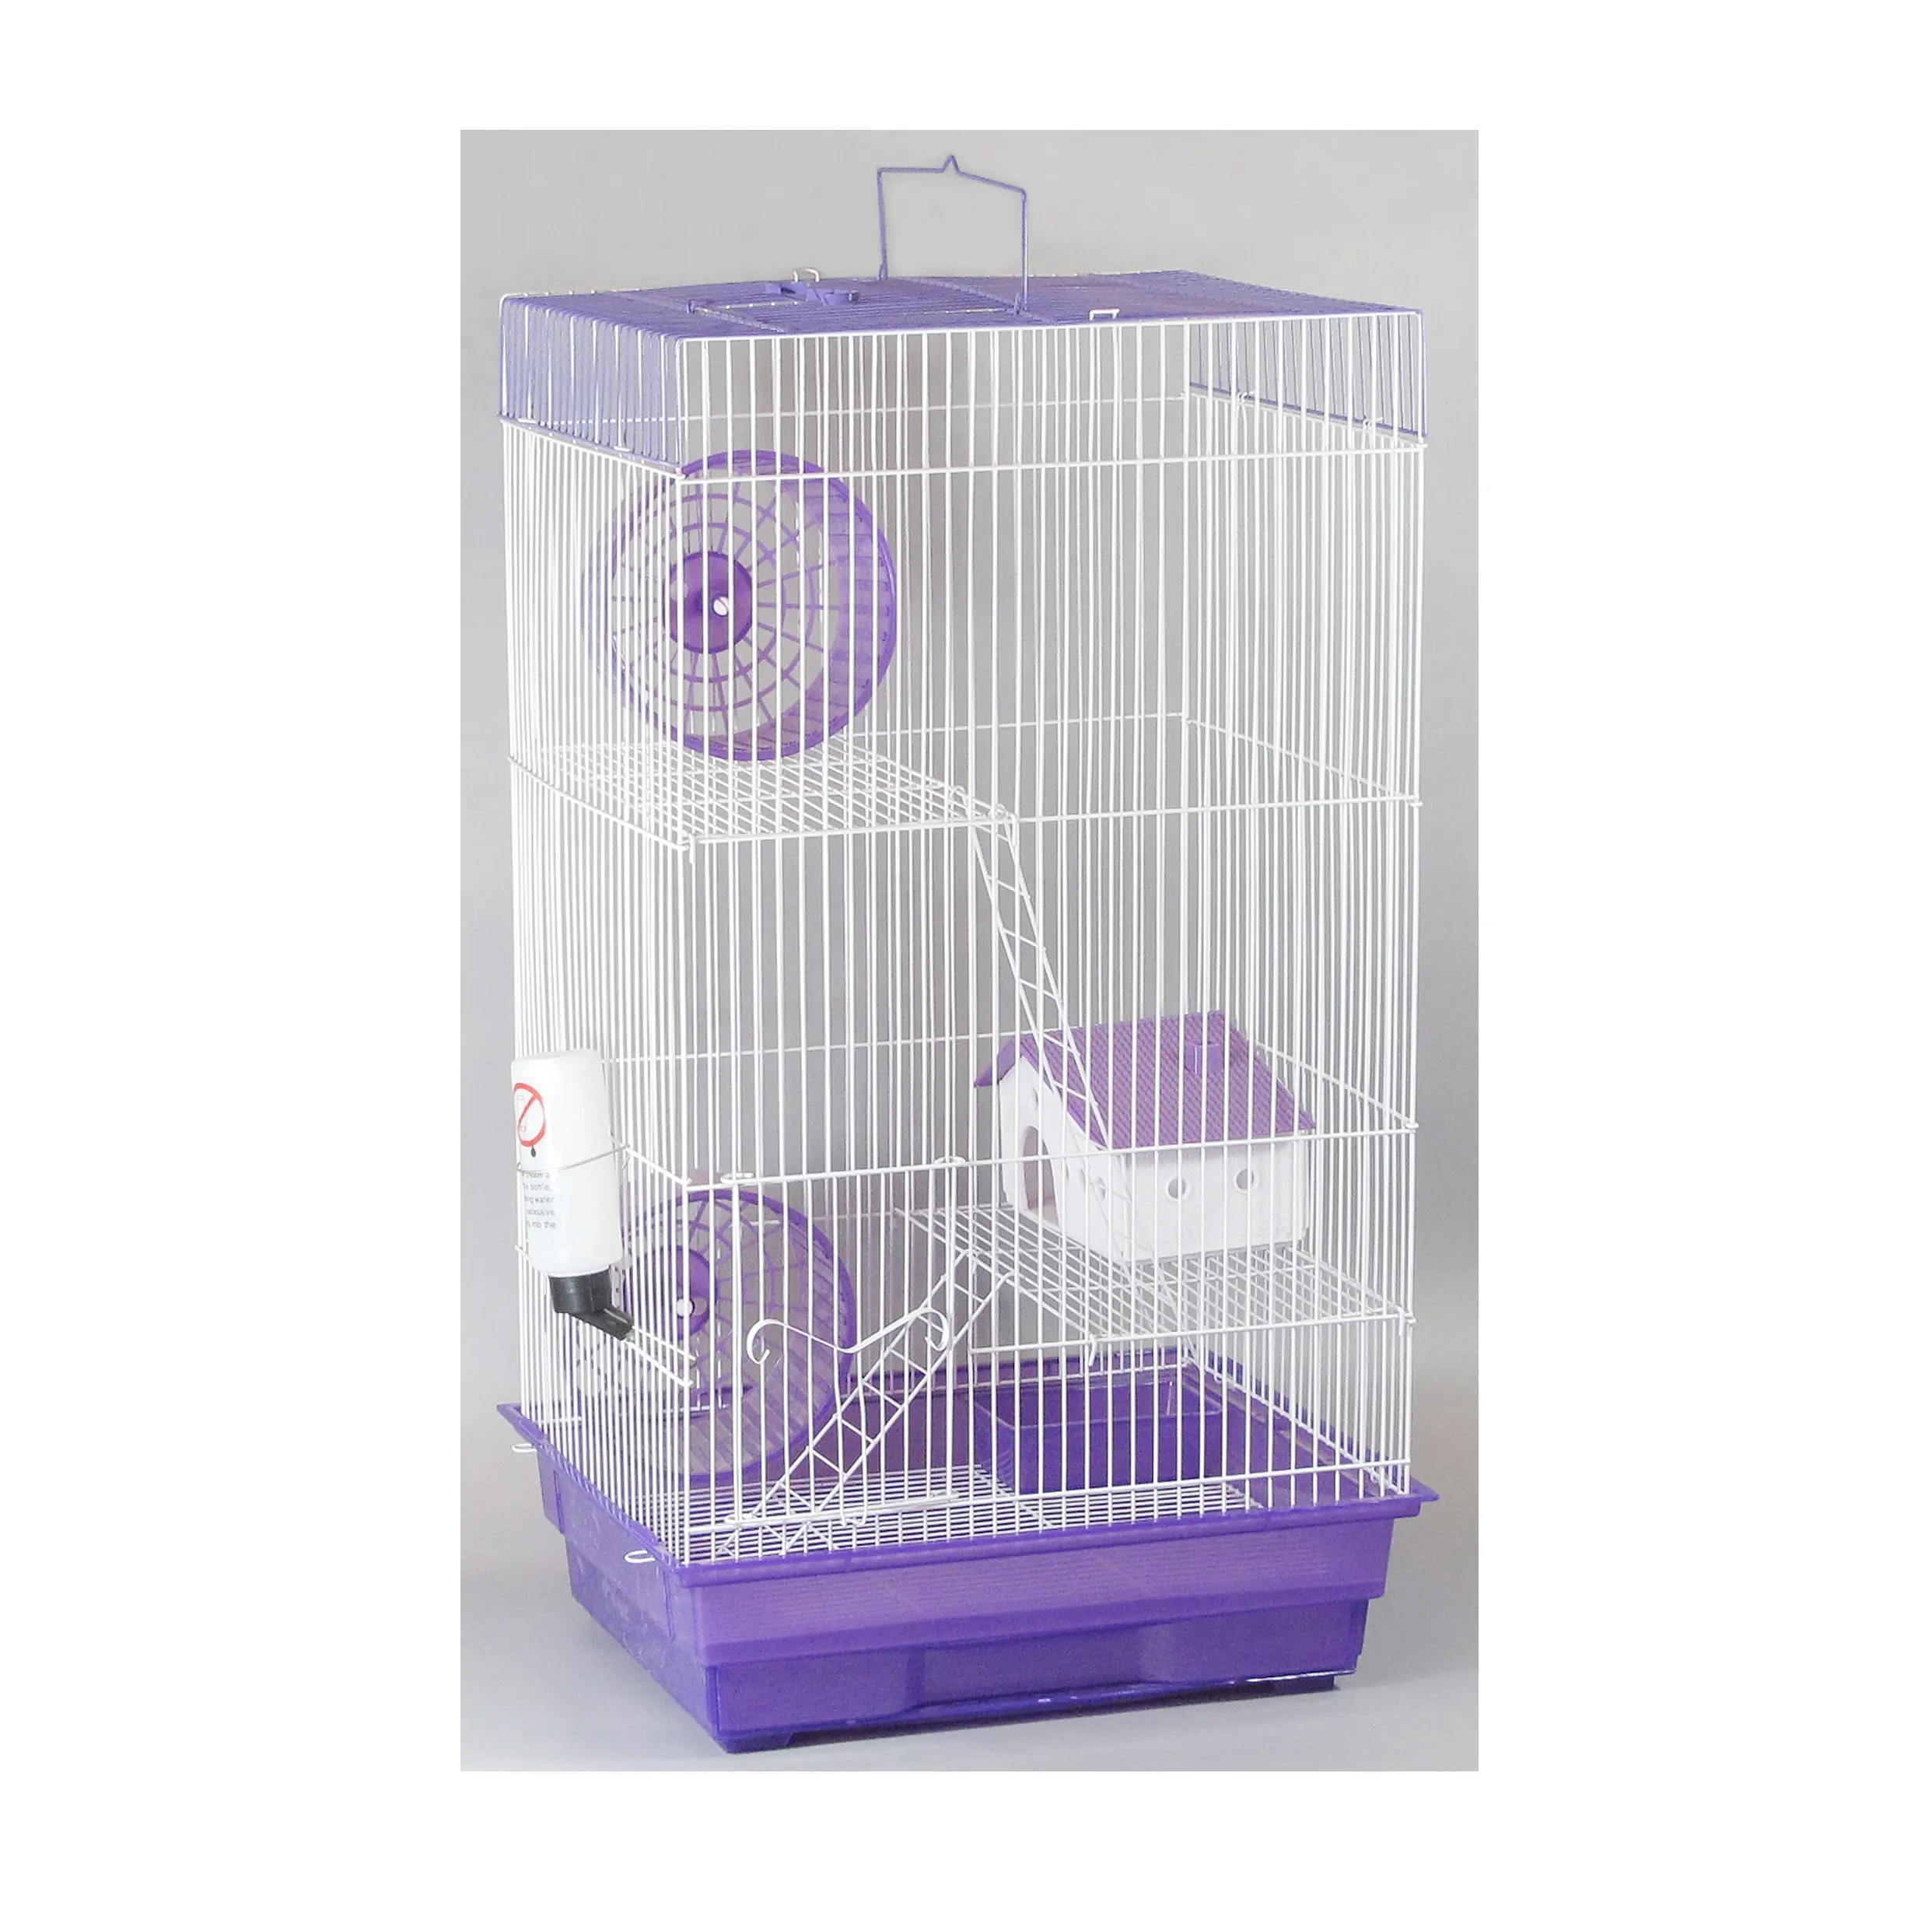 Gaiola para hamster de 2 andares, preço de atacado, vendas diretas, gaiolas para animais de estimação personalizadas de 60 cm, grande gaiola para hamster de plástico